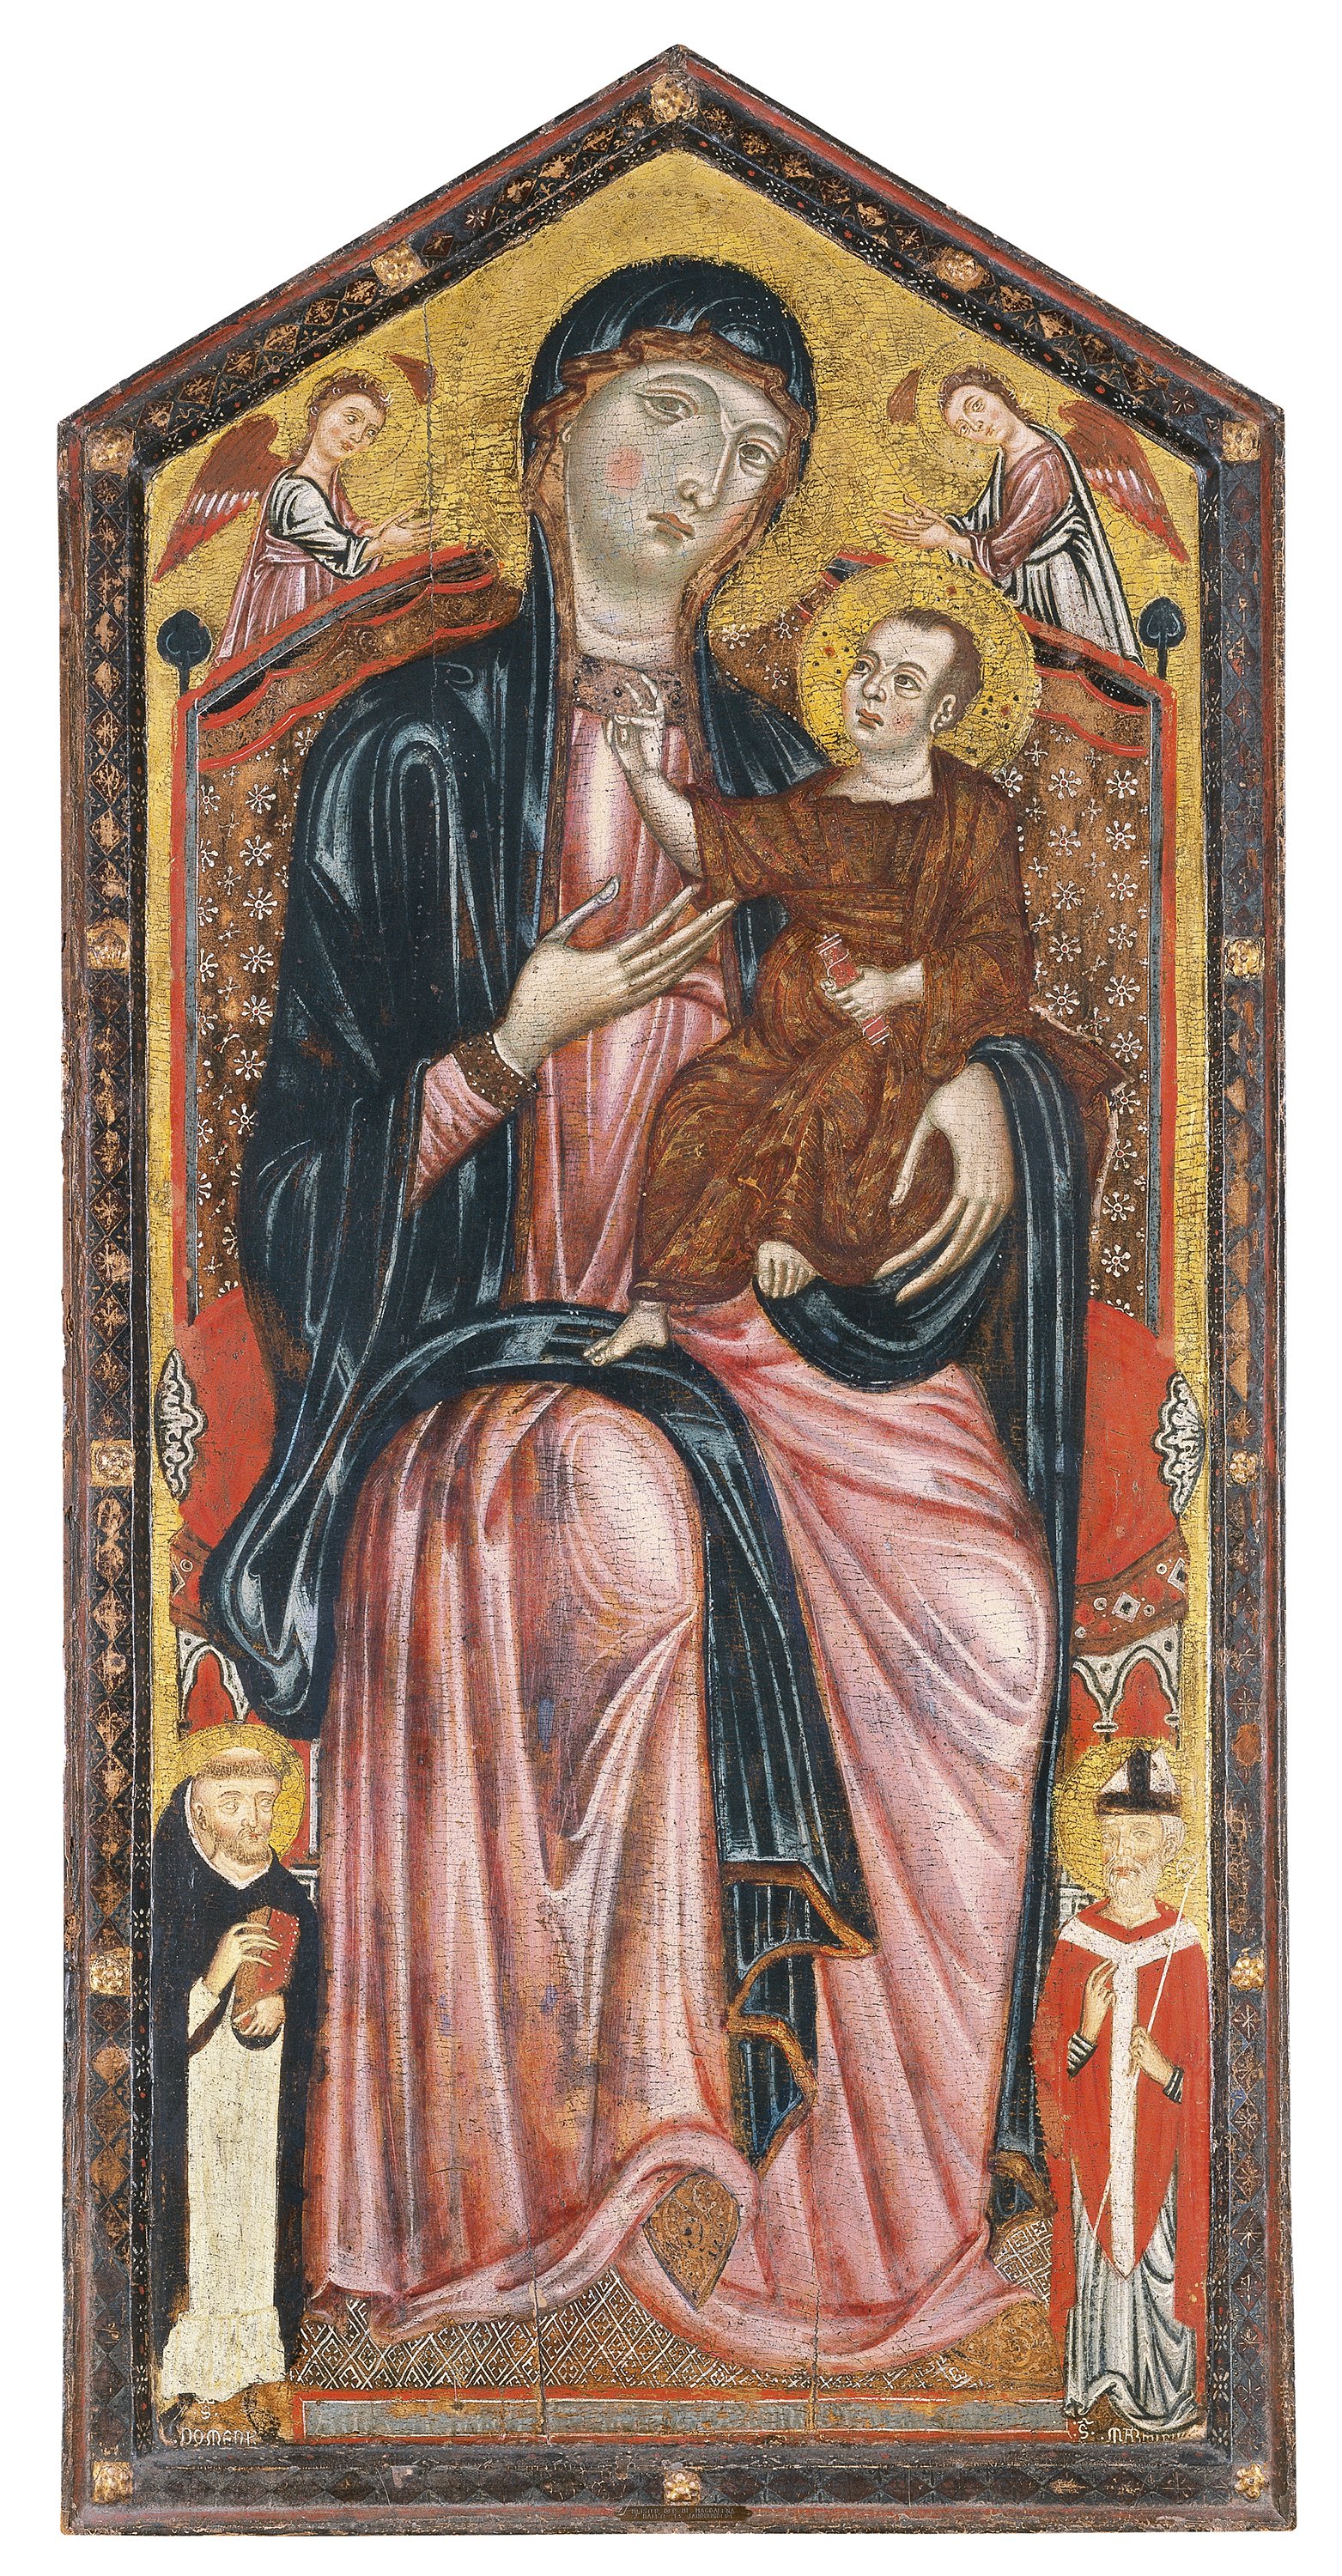 La Virgen y el Niño entronizados con santo Domingo, san Martín y dos ángeles. Maestro DE LA MAGDALENA